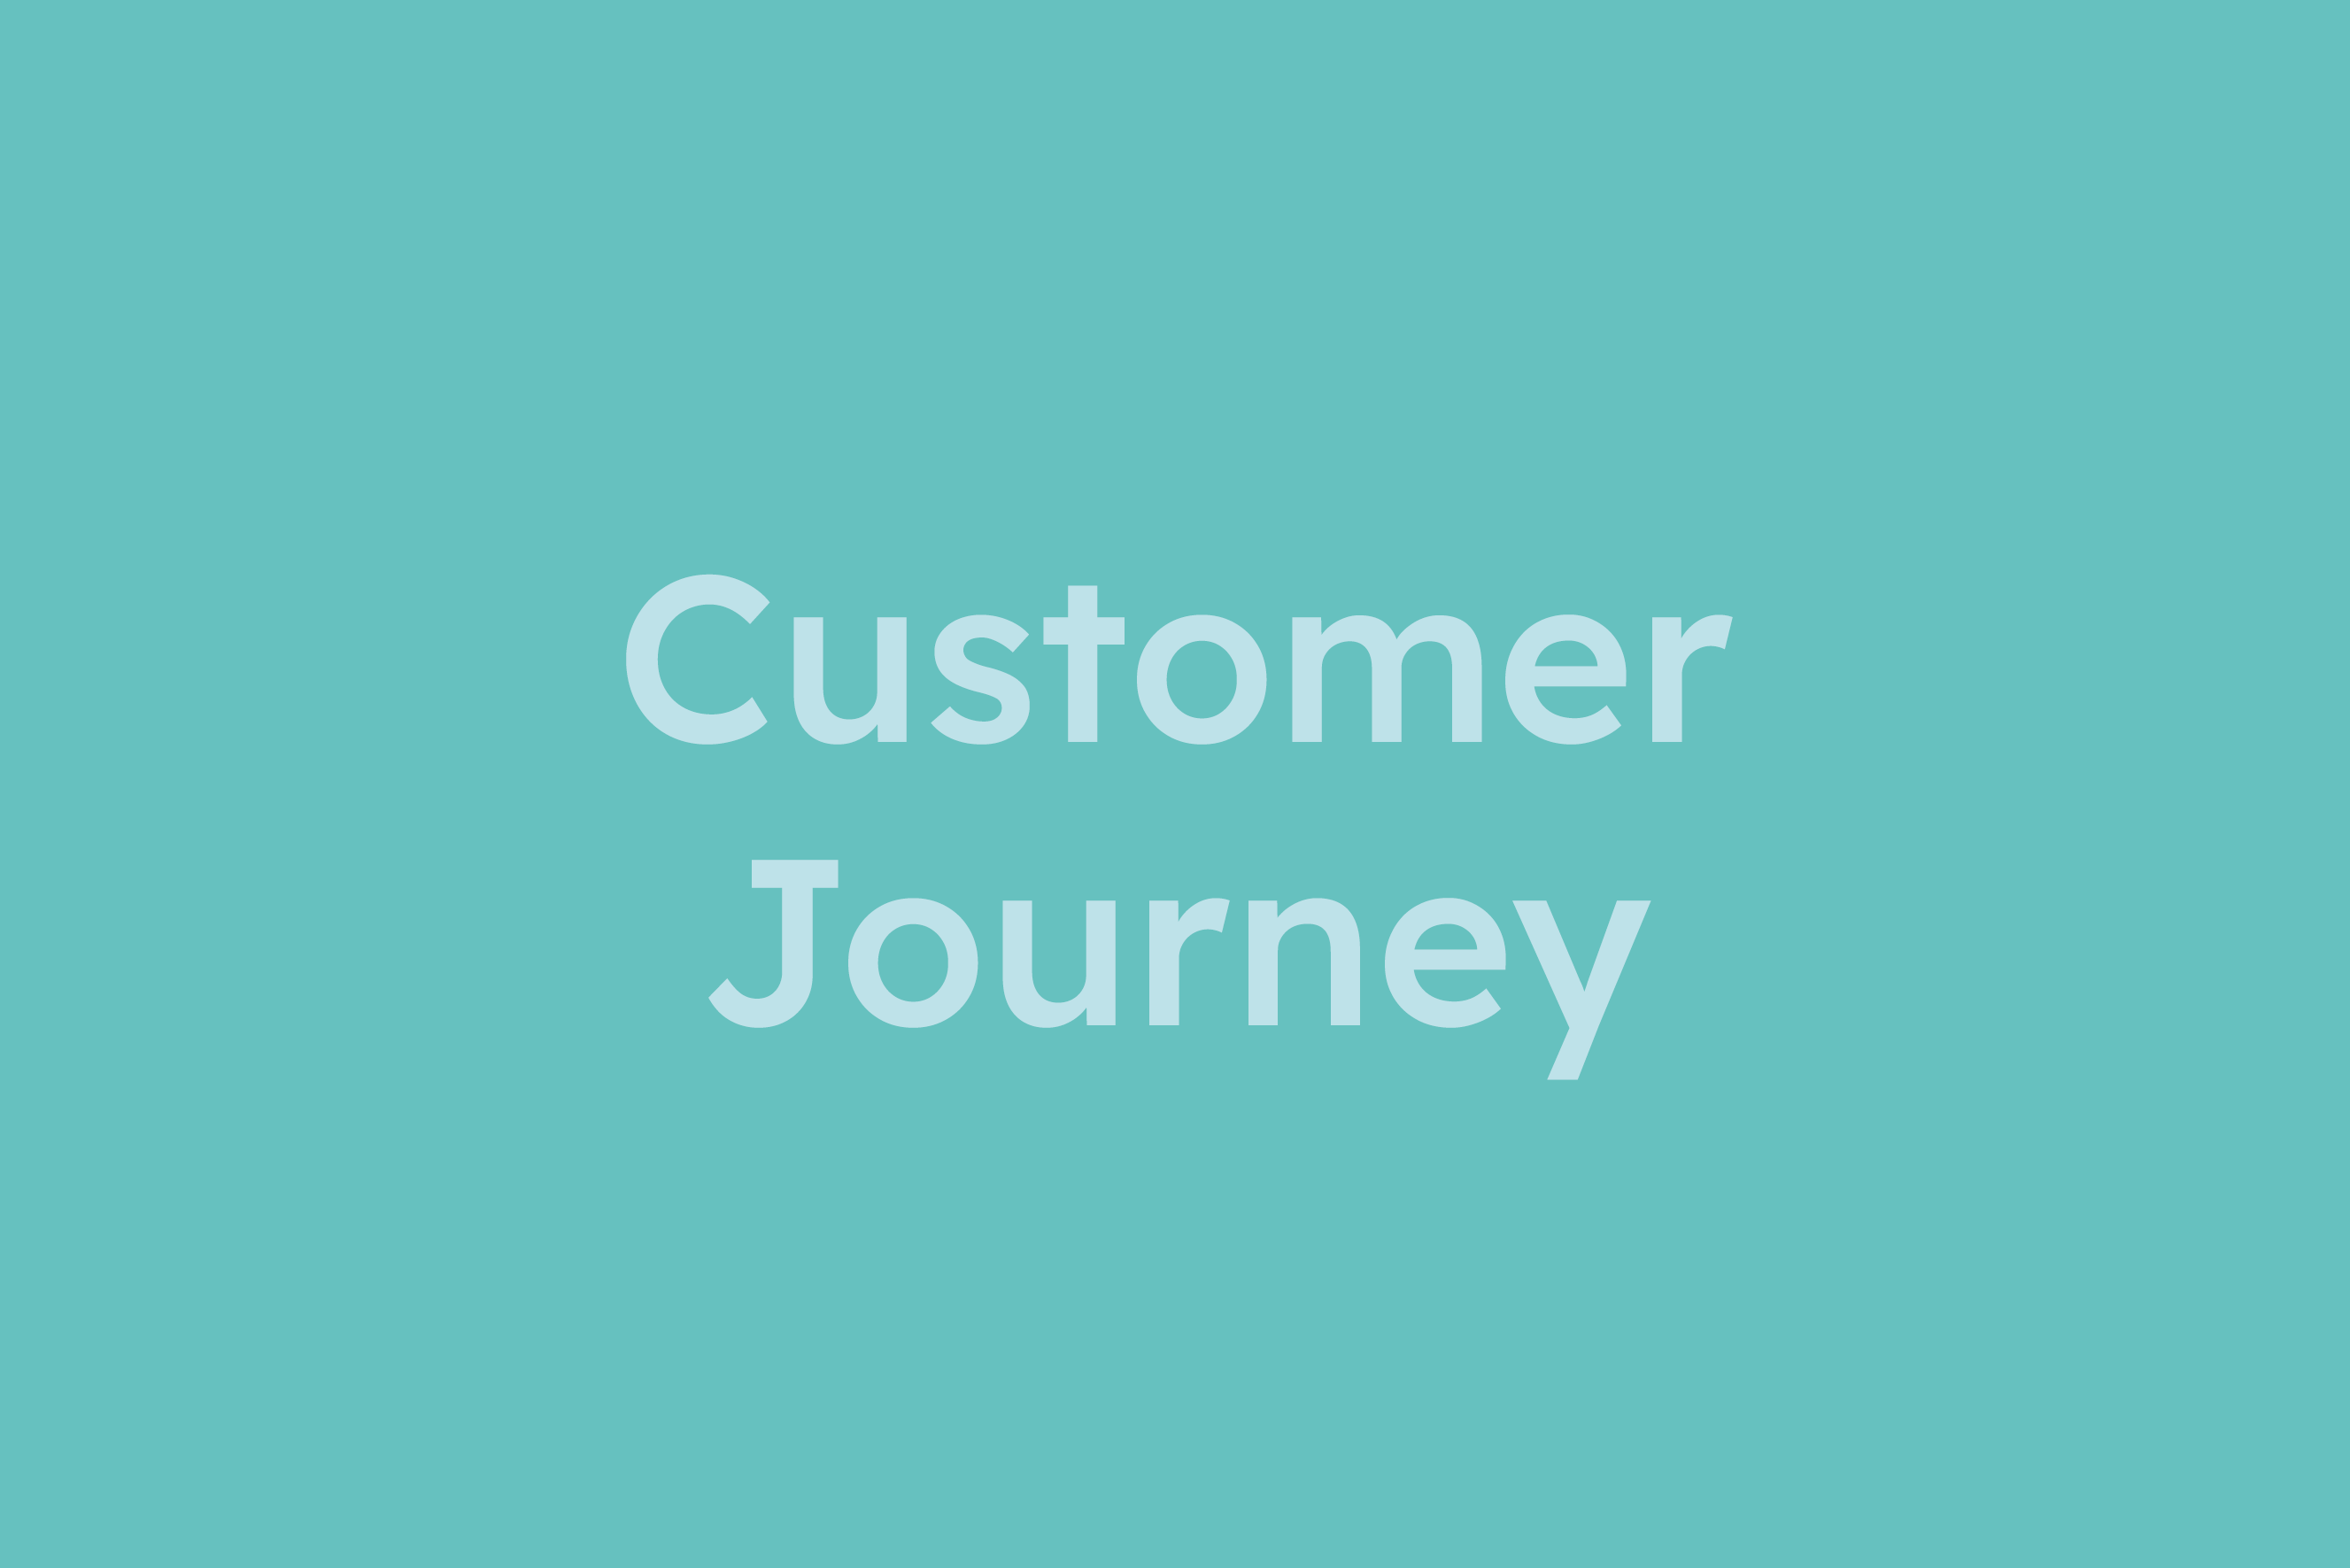 Customer Journey erklärt im Glossar von Campaign